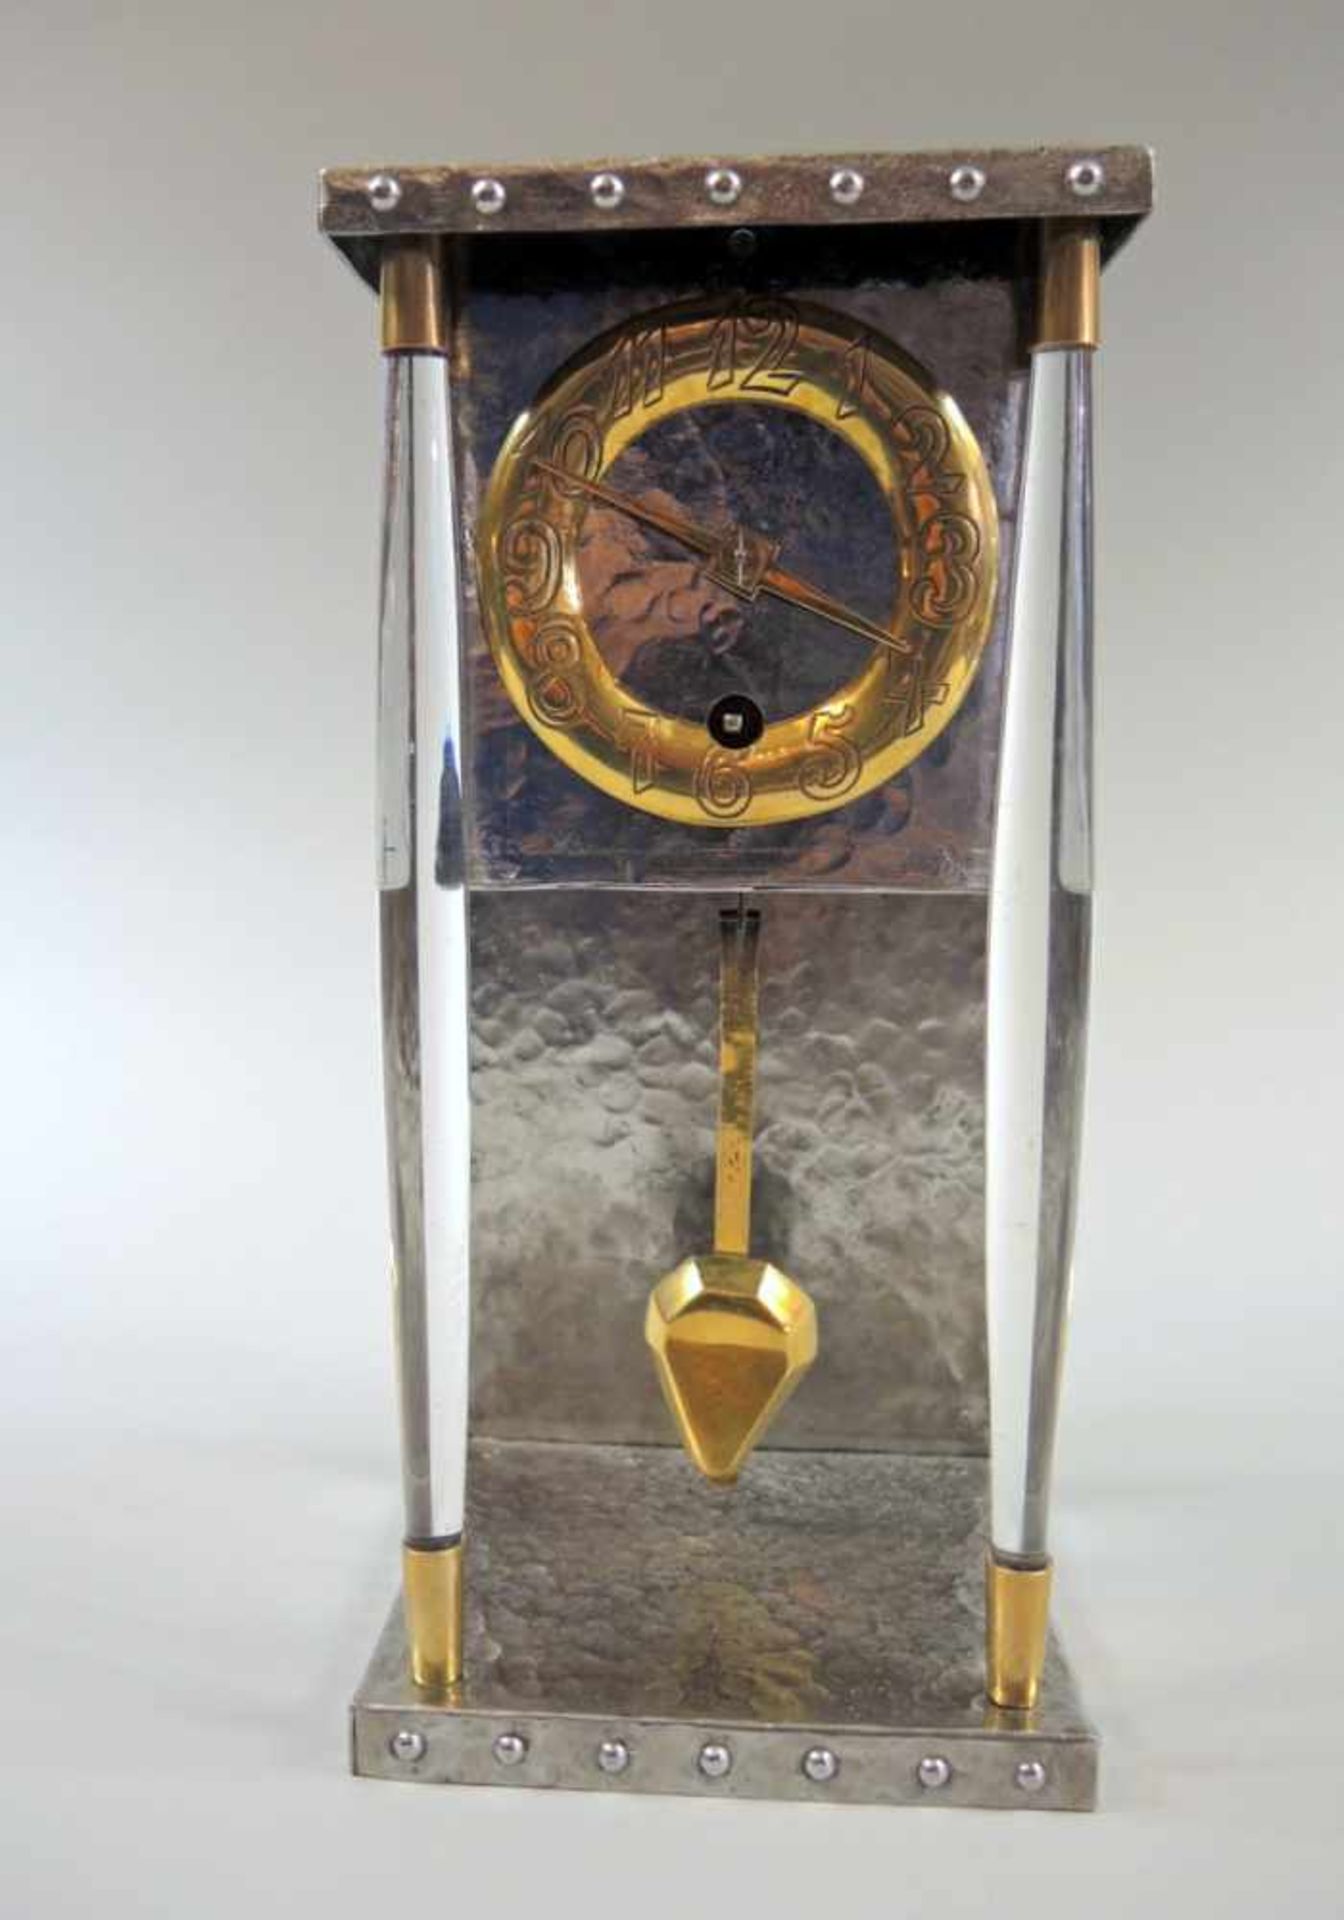 Hochwertige Art déco KommodenuhrGetriebenes Eisen, Kupfer, Bakelit. Uhrenkasten mit goldenem